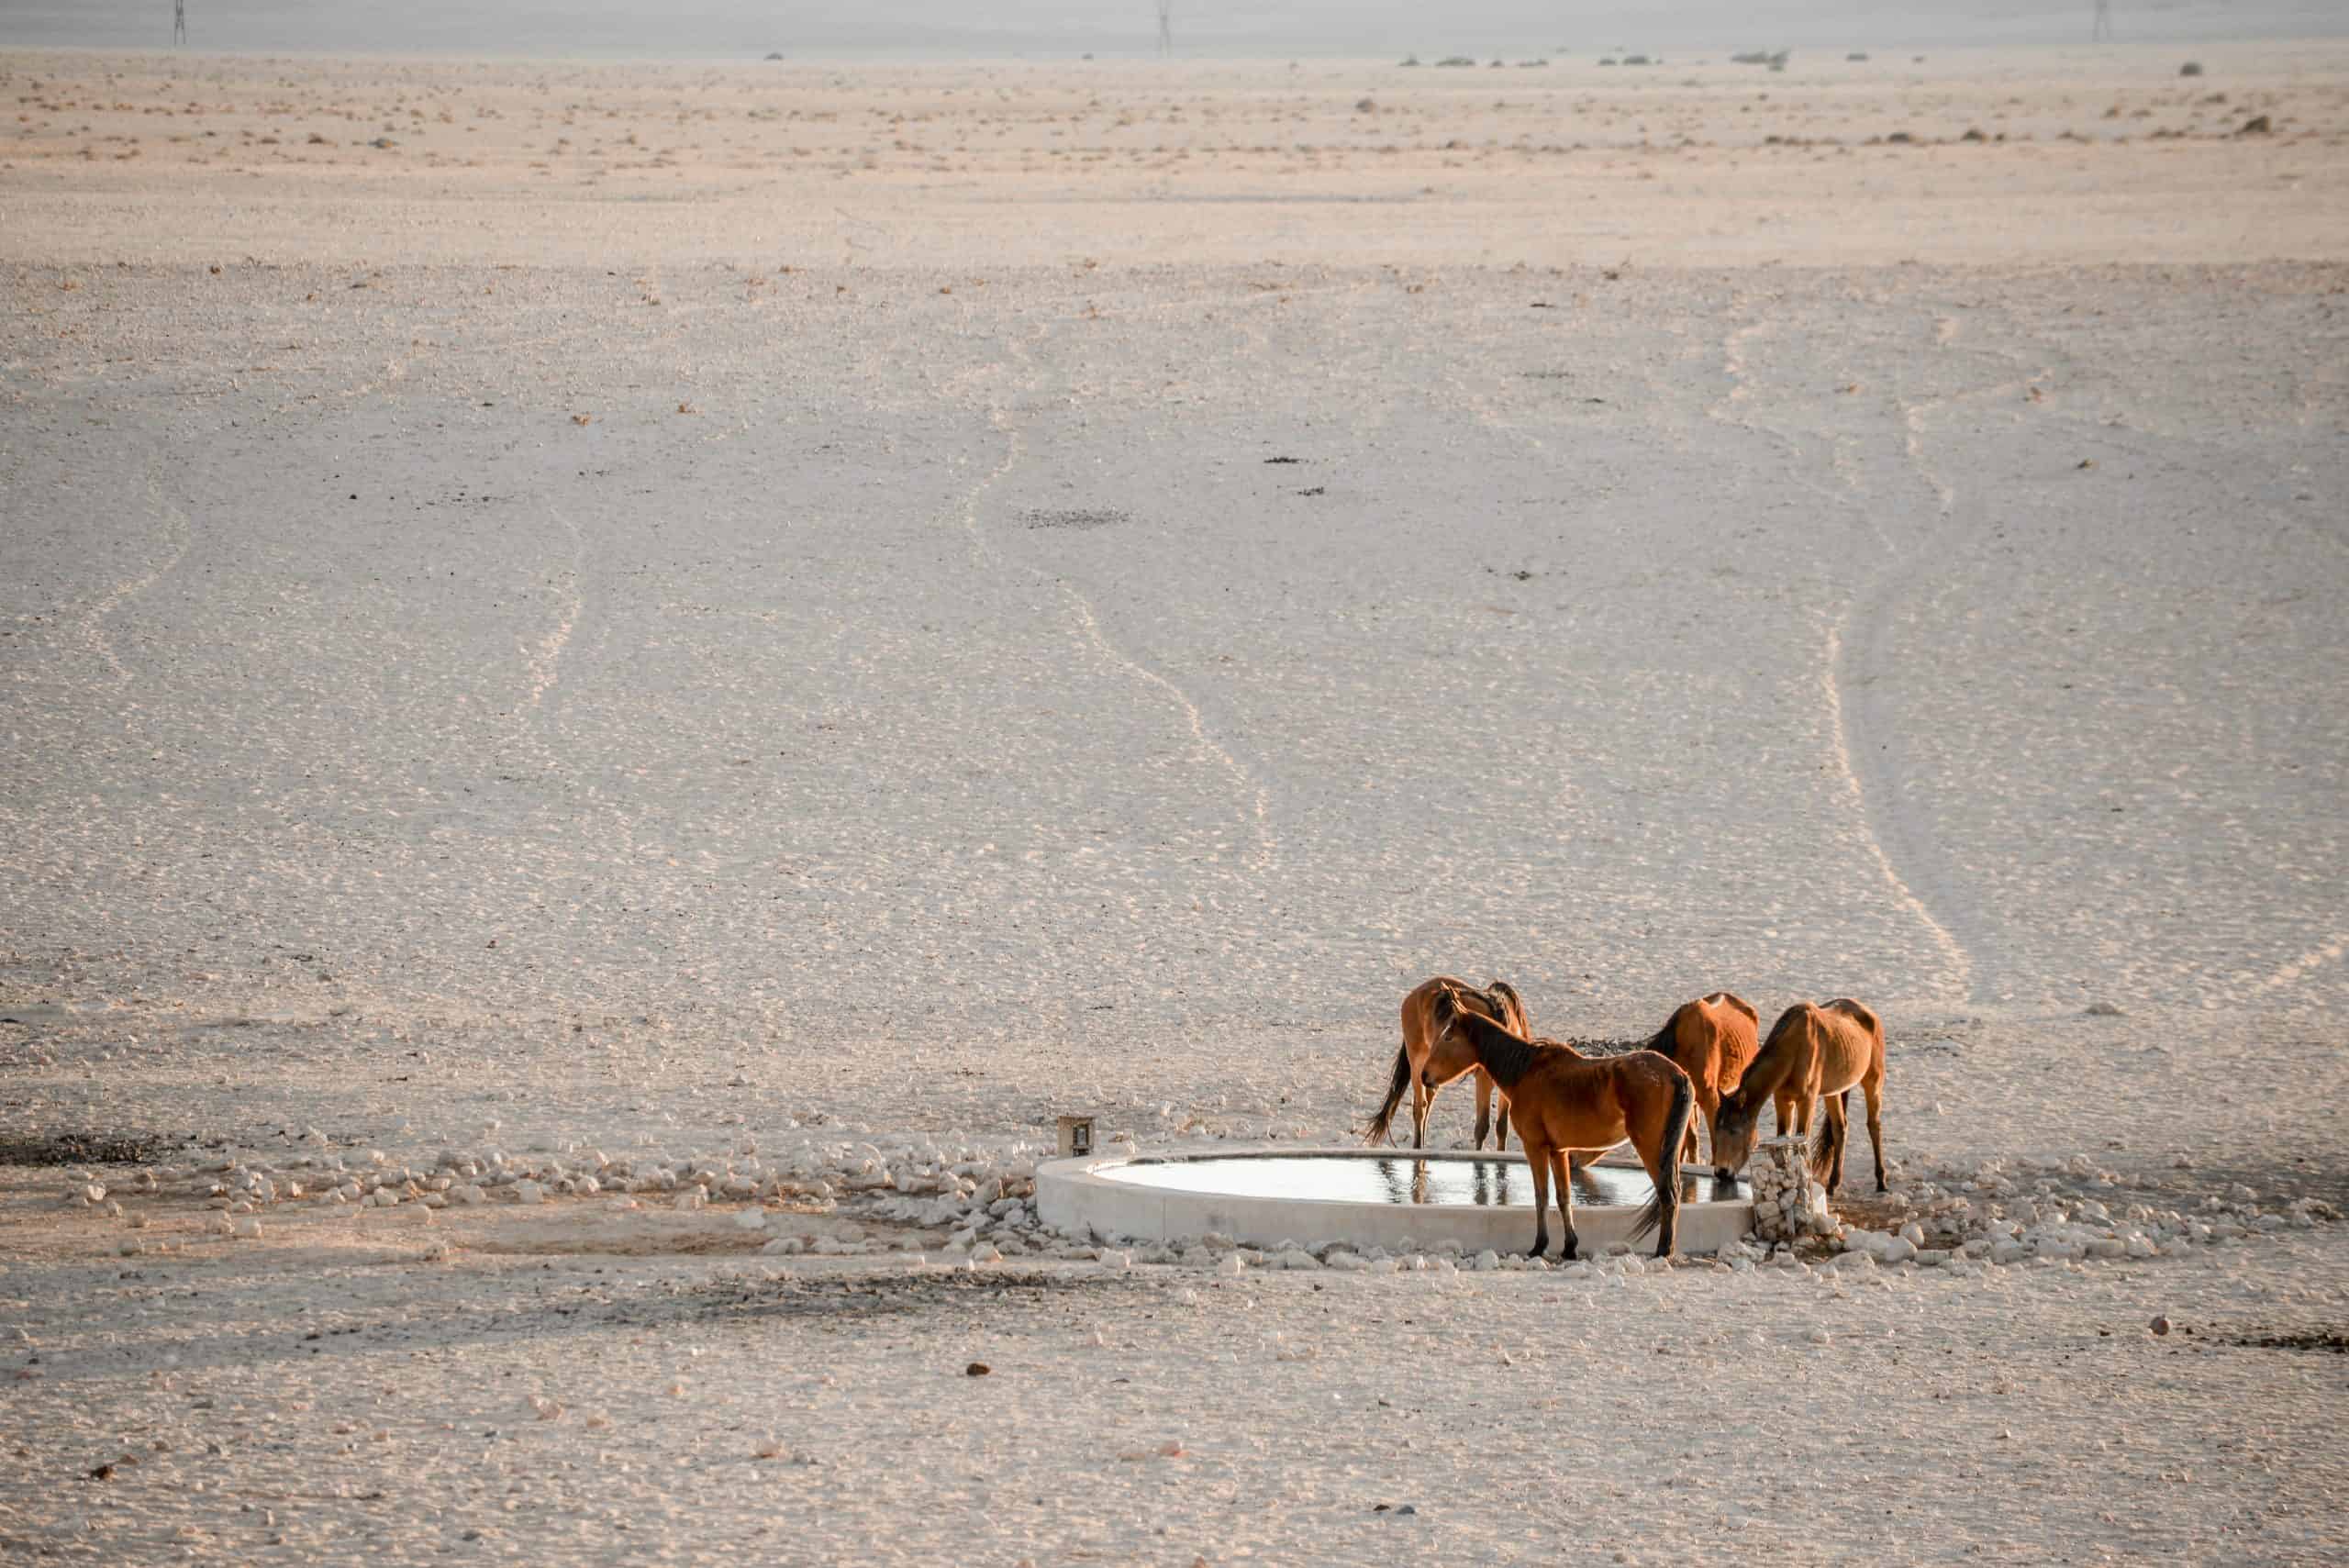 Nambia's wild horses